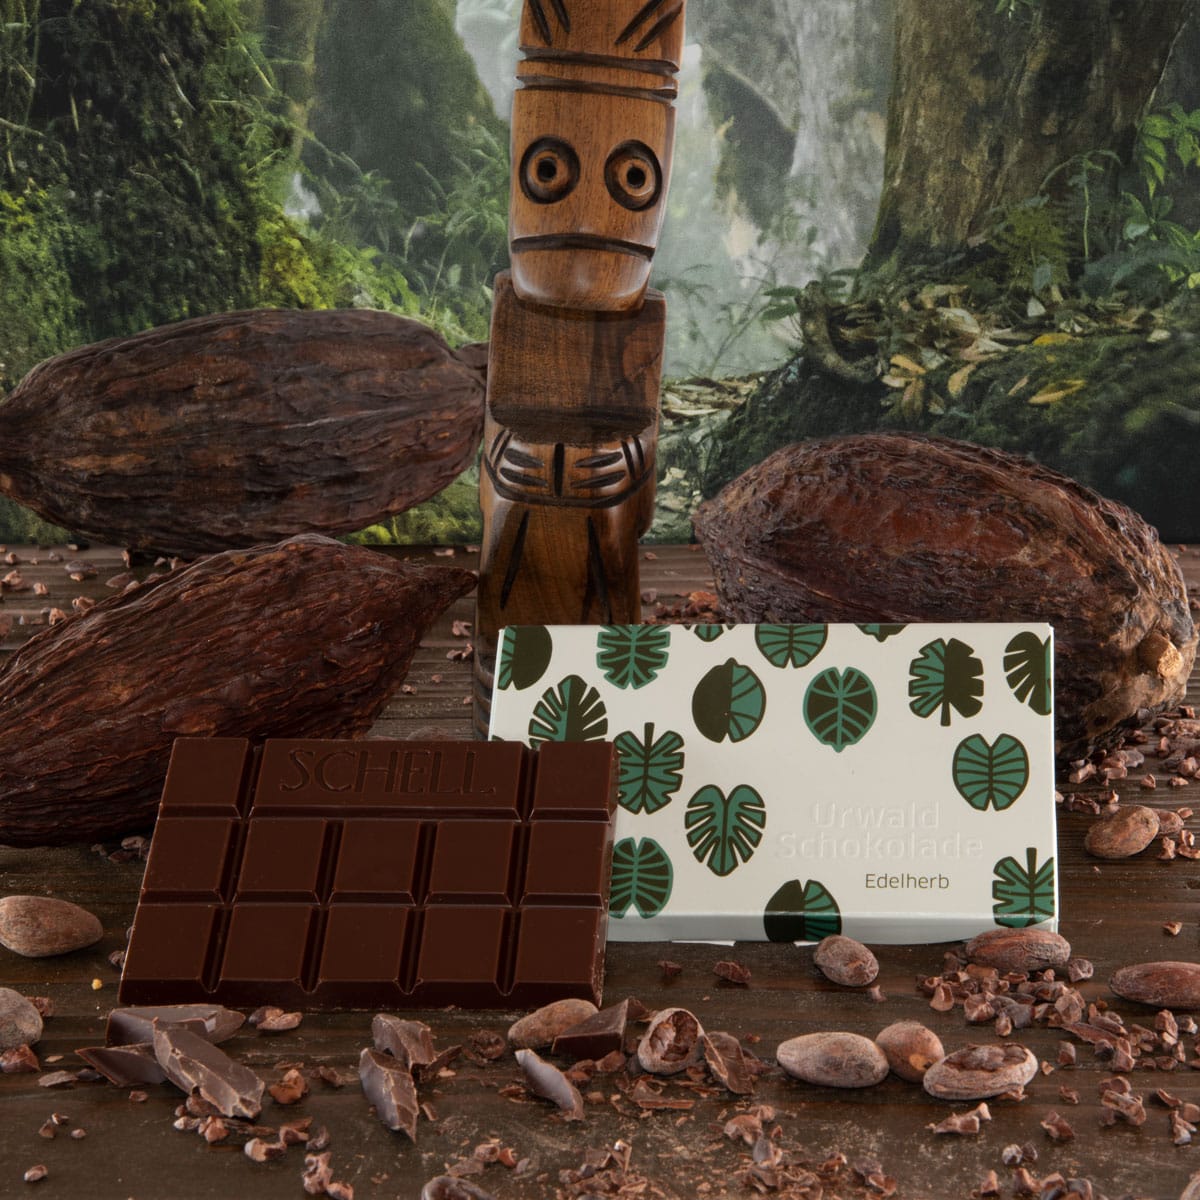 Borneo Edelherb mit 71% Kakaoanteil, die Kakaobohnen werden fermentiert und bietet ein absolutes Genusserlebnis. Die Verpackung ist eine Schatulle aus Karton mit Abbildung von grünen Blättern